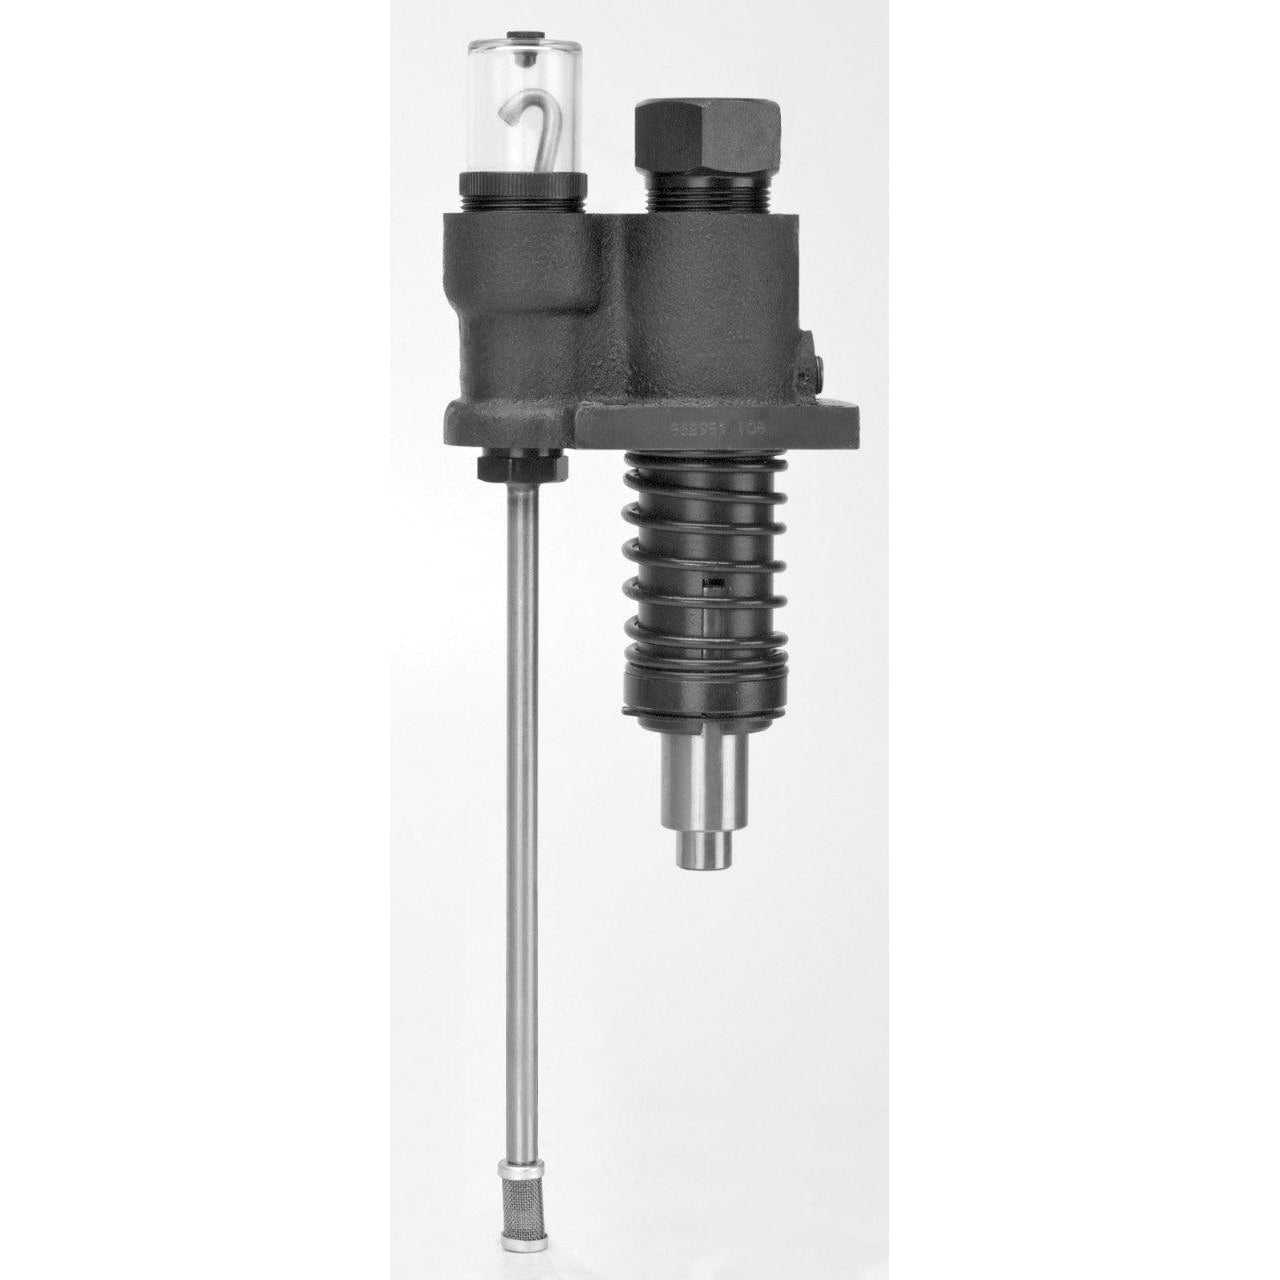 Manzel¨ HP-15ª High Pressure Compressor Lubricator Replacement Pump, 1/4 in, 18000 psi